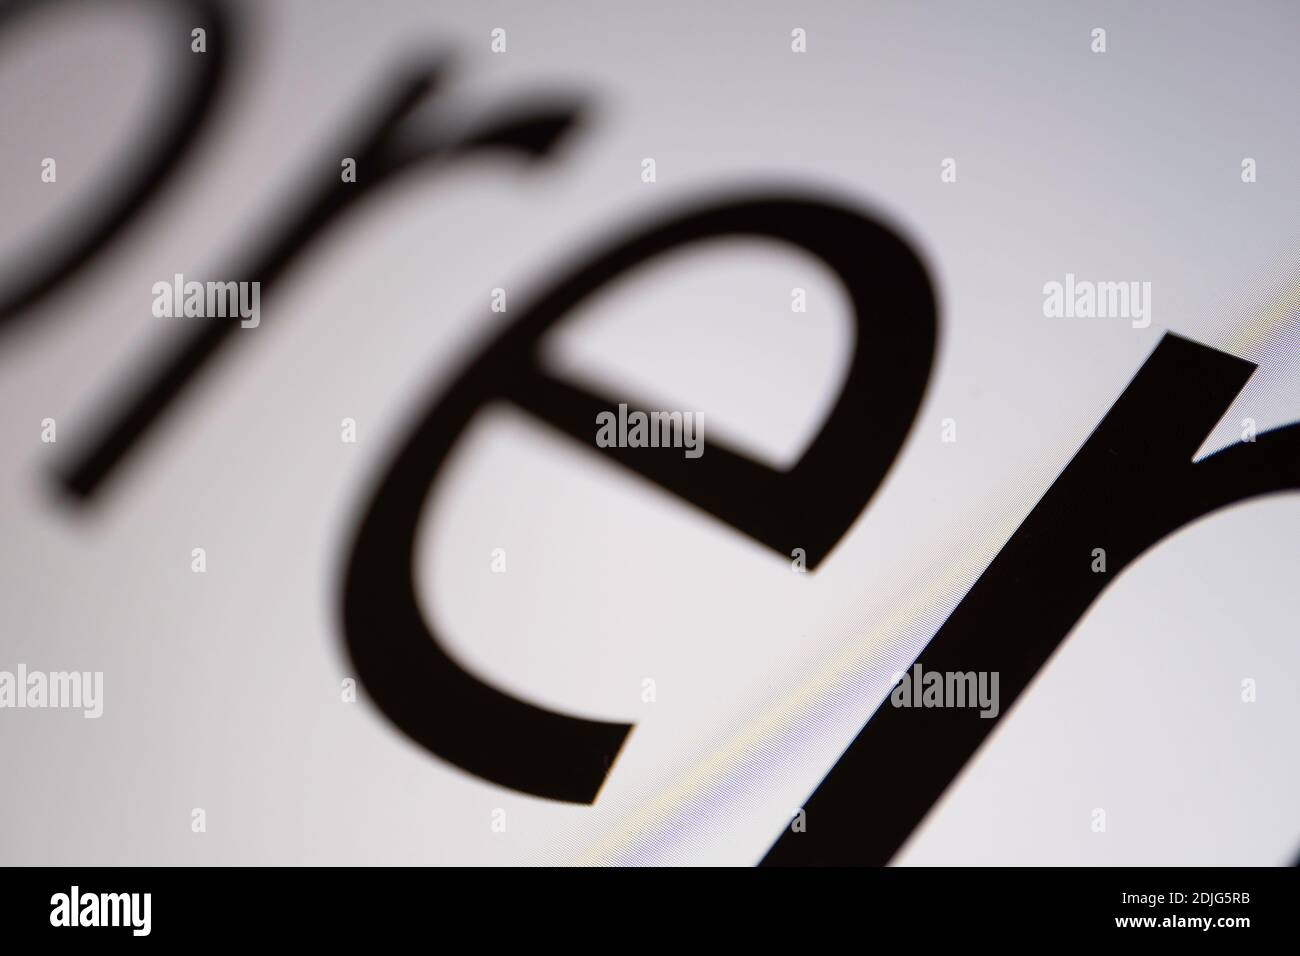 Primer plano de parte del texto Lorem Ipsum en blanco y negro en una pantalla de monitor con enfoque en la letra N en la parte inferior derecha. Profundidad de campo muy estrecha Foto de stock